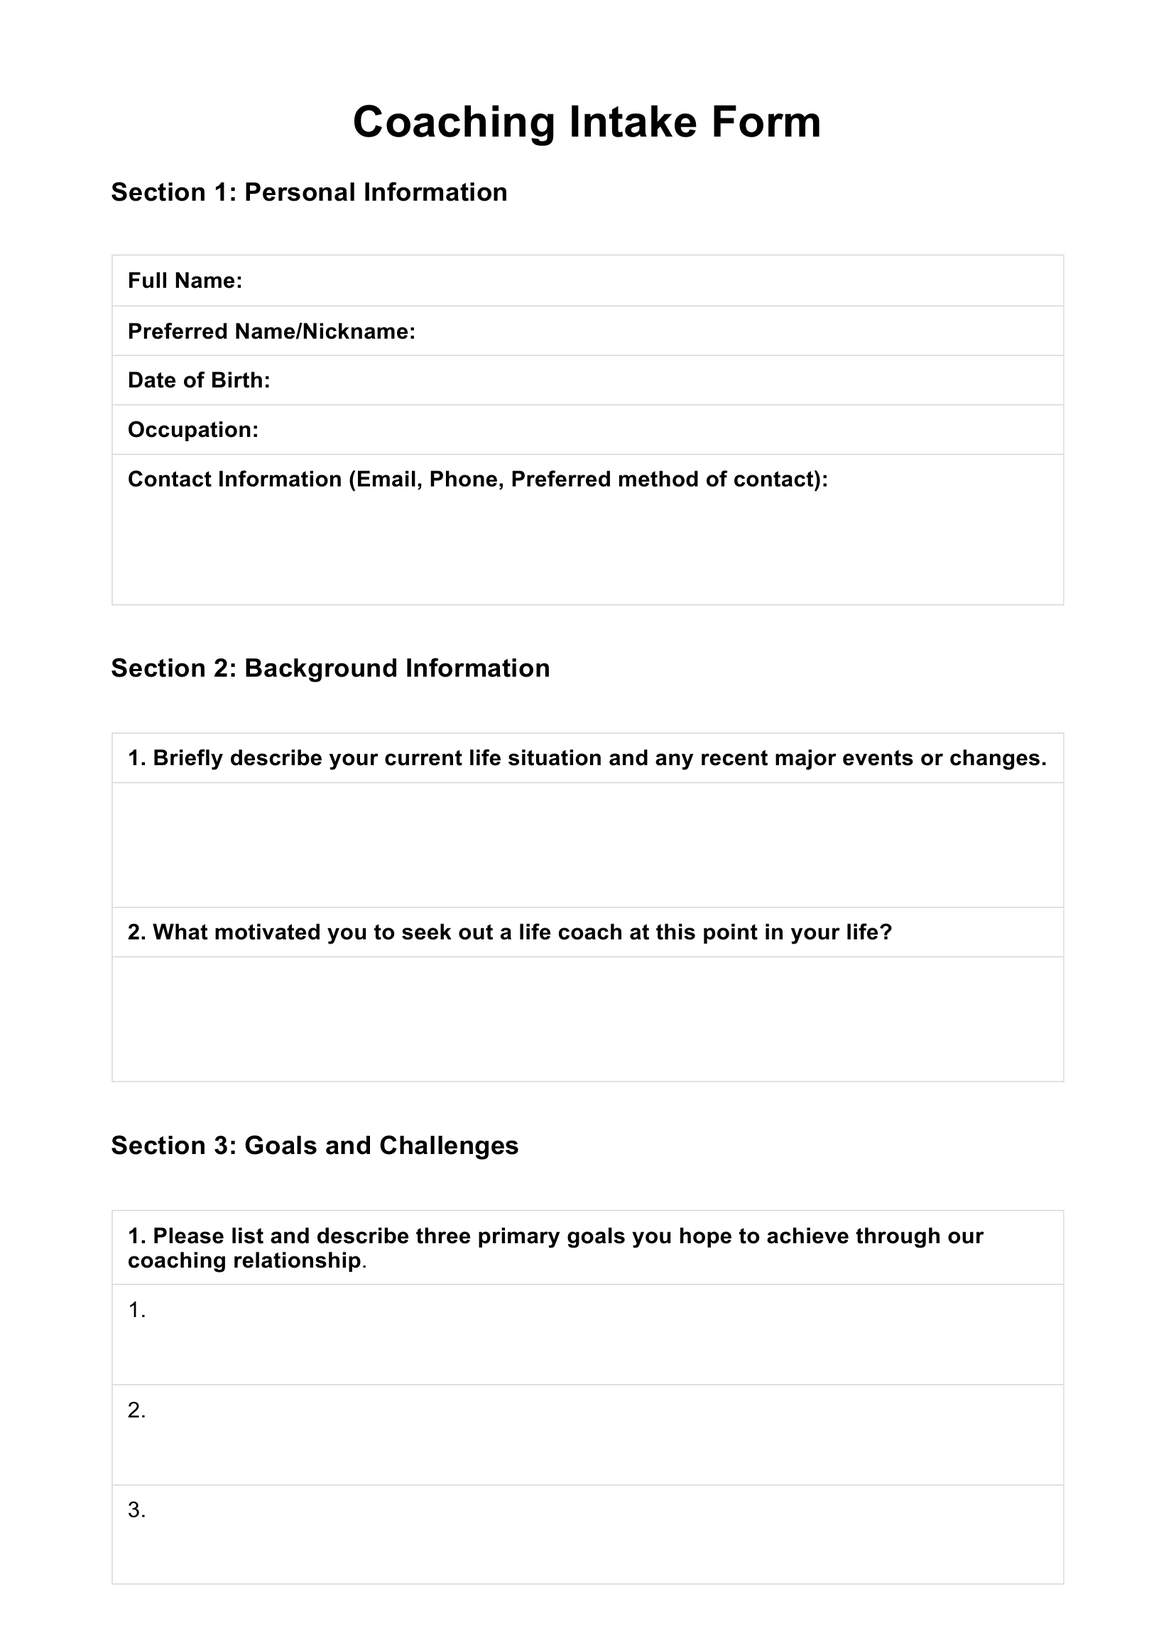 Coaching Intake Forms PDF Example